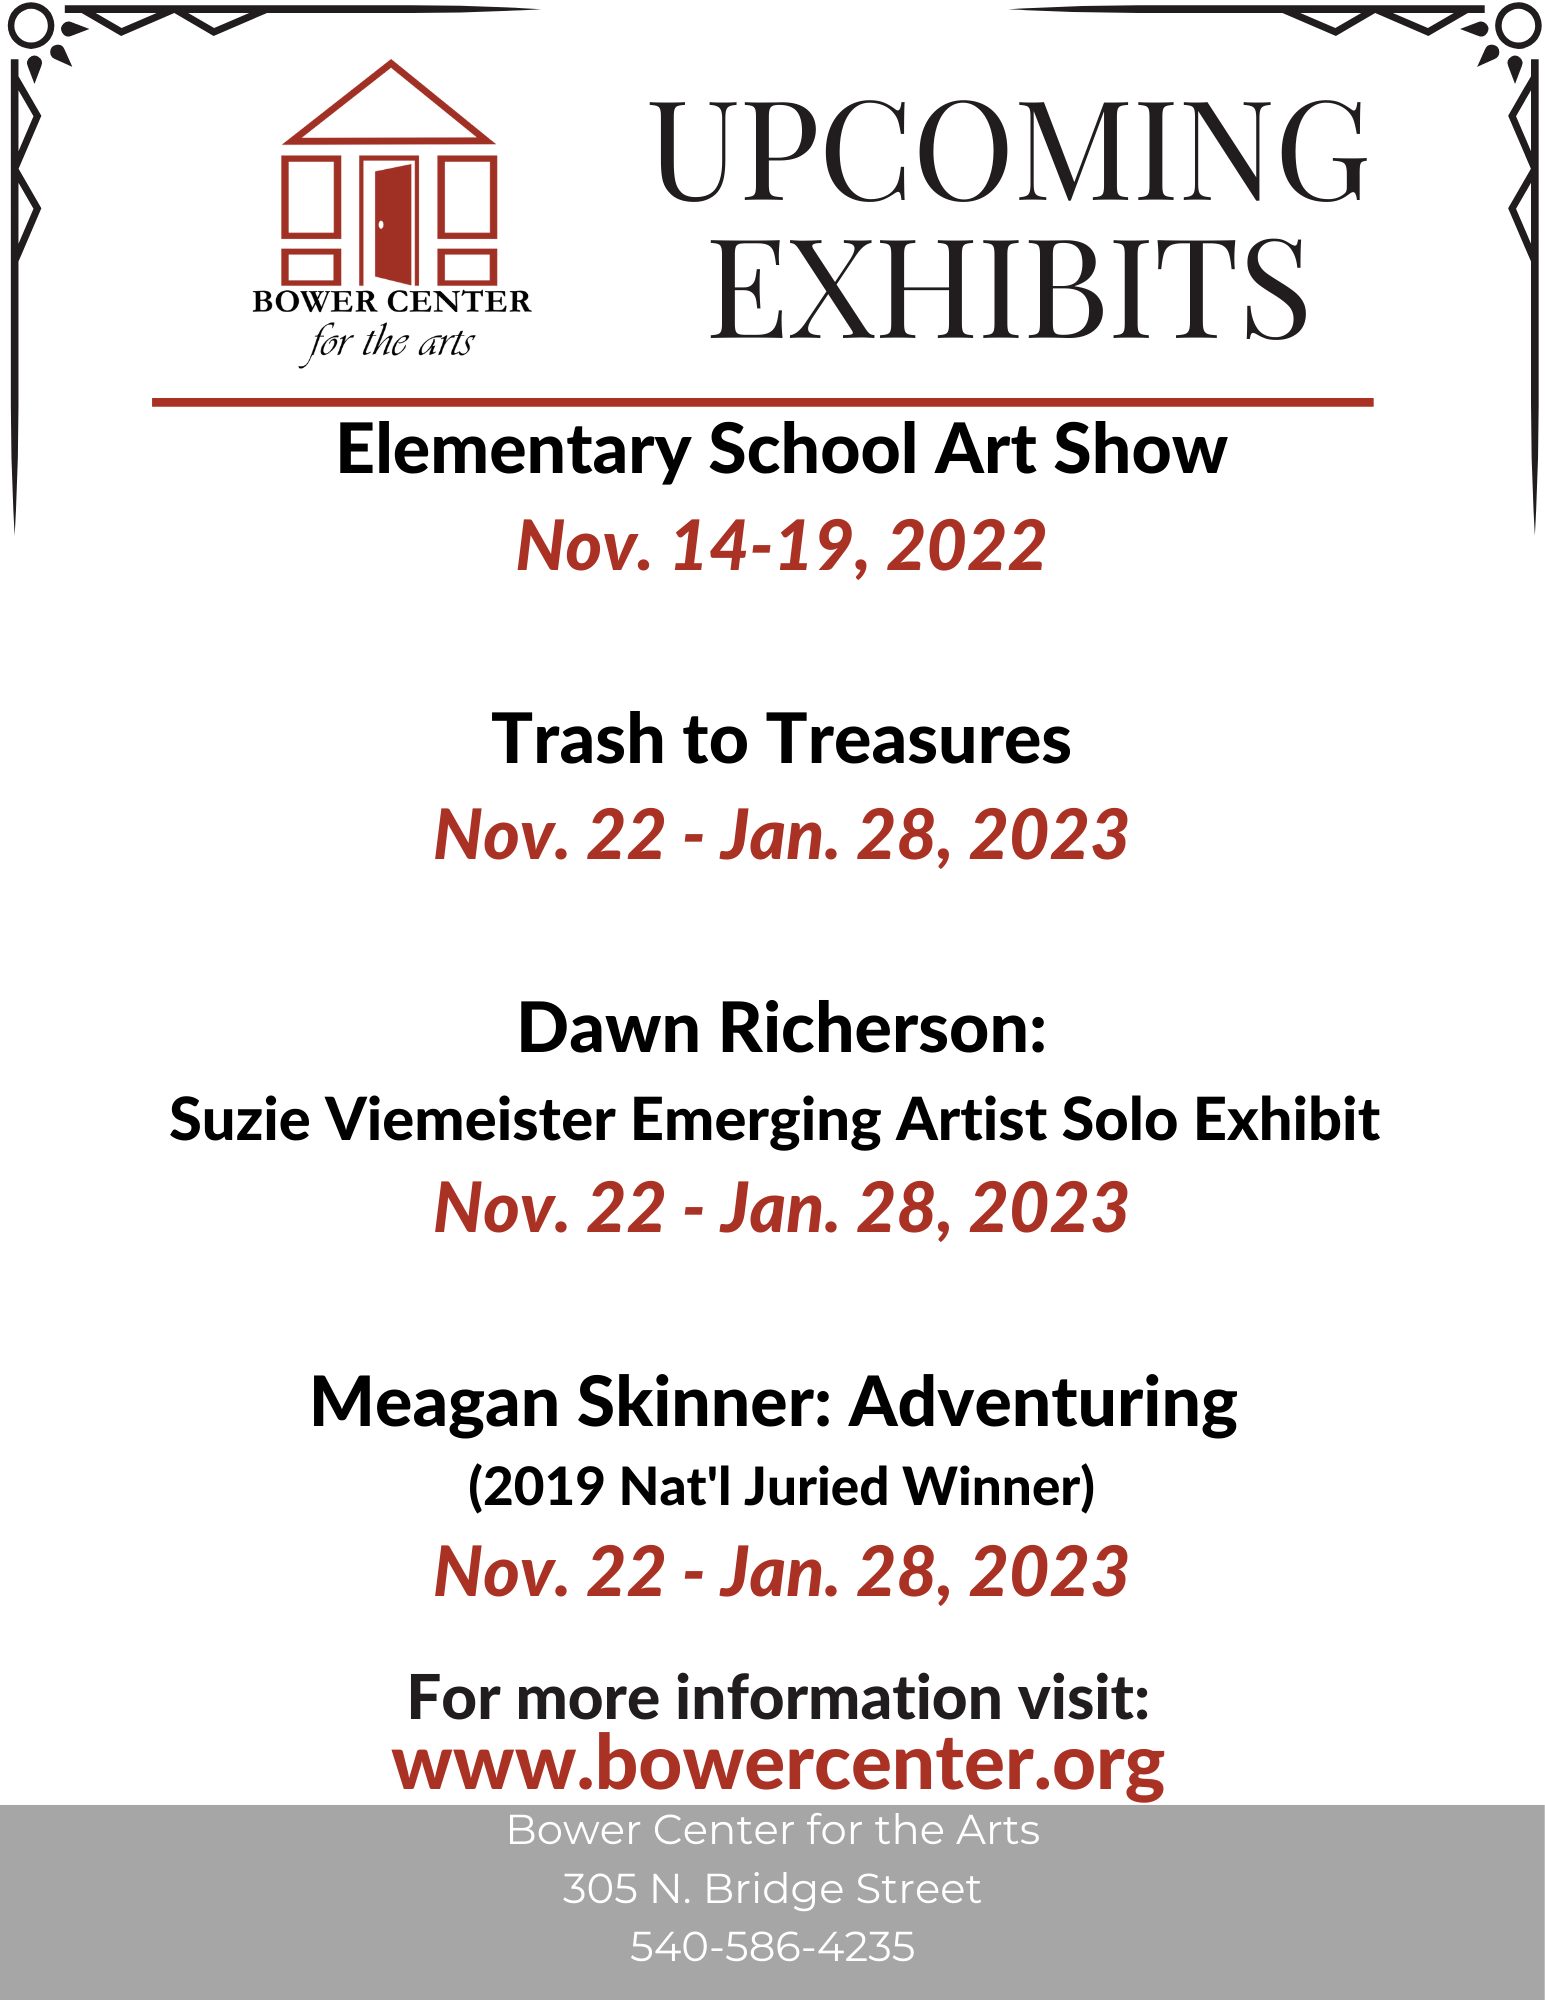 2022 Exhibits through Nov 12